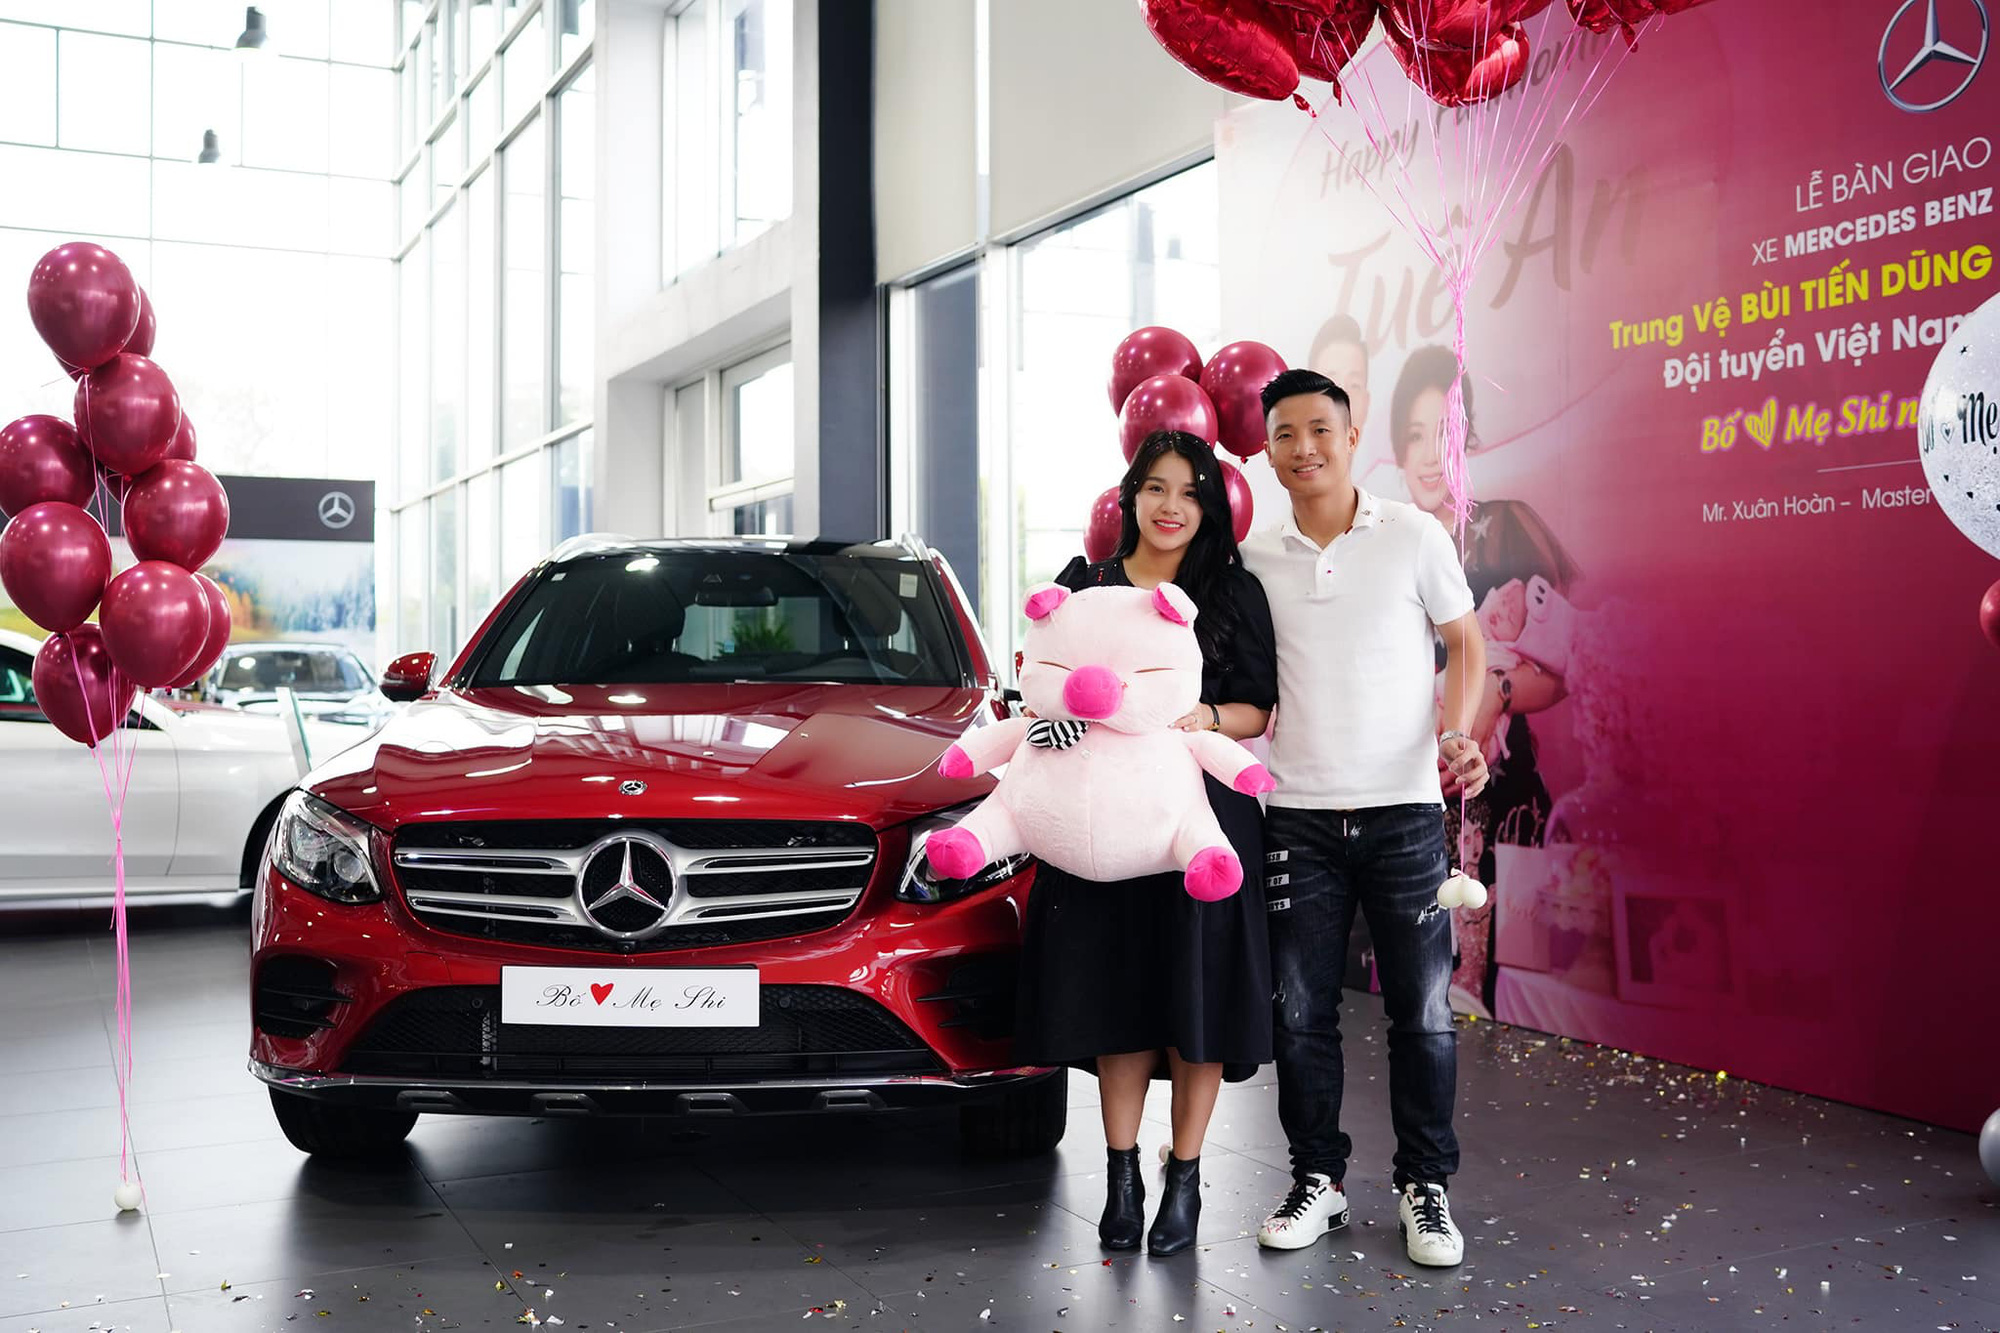 Soi xe của tuyển thủ đội tuyển Việt Nam: Ai cũng mua Mercedes-Benz nhưng đội trưởng Quế Ngọc Hải lại giản dị bất ngờ - Ảnh 1.